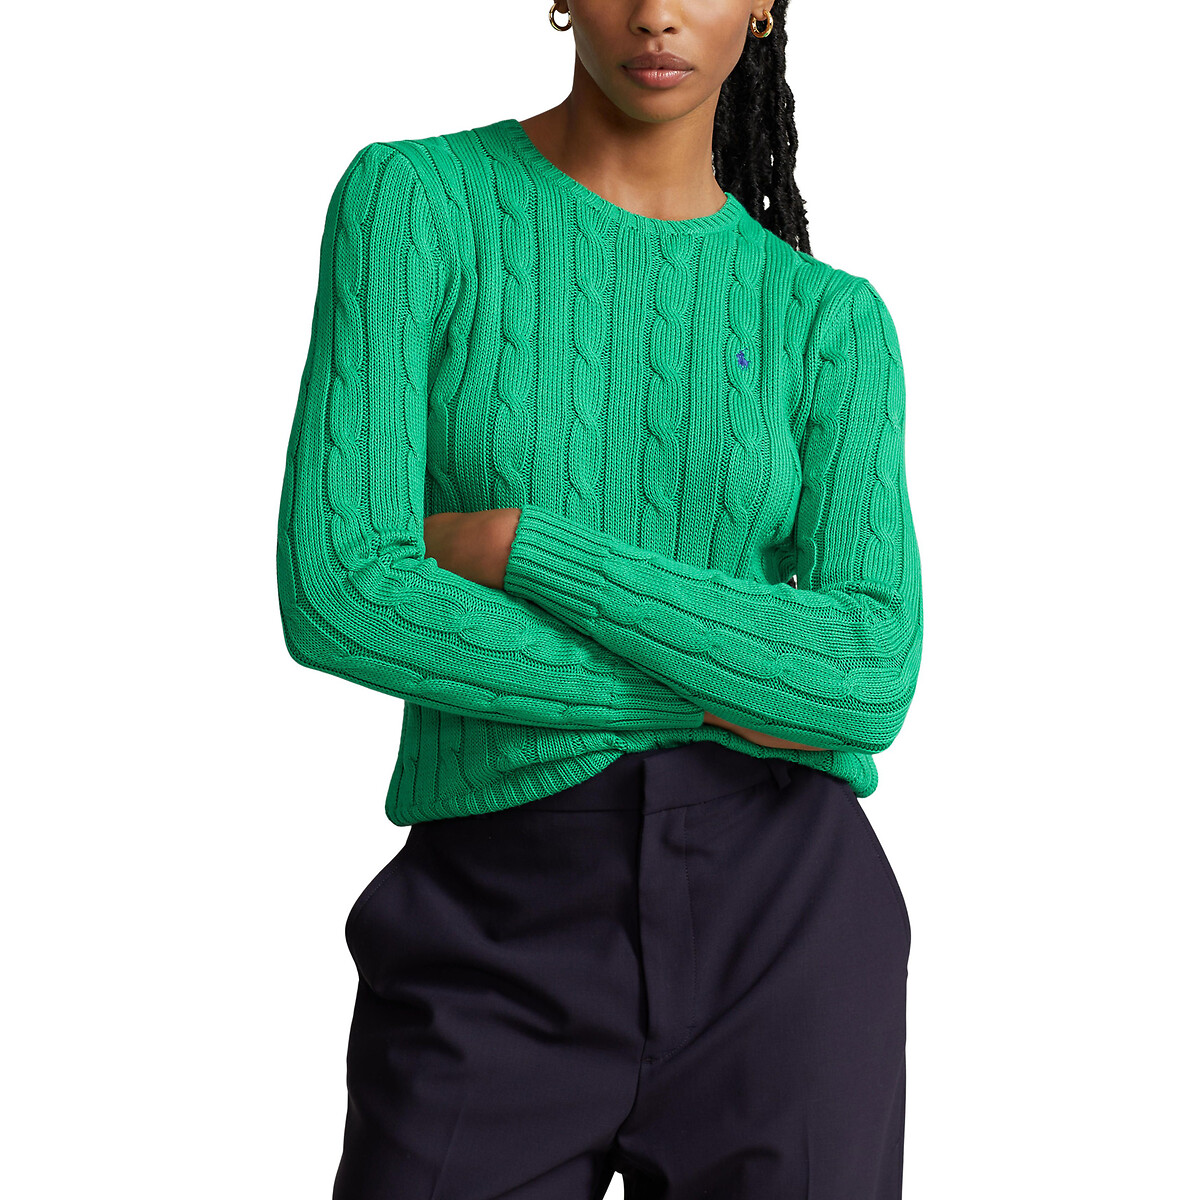 Пуловер Julianna из витого трикотажа с круглым вырезом M зеленый пуловер с круглым вырезом из трикотажа с витым узором